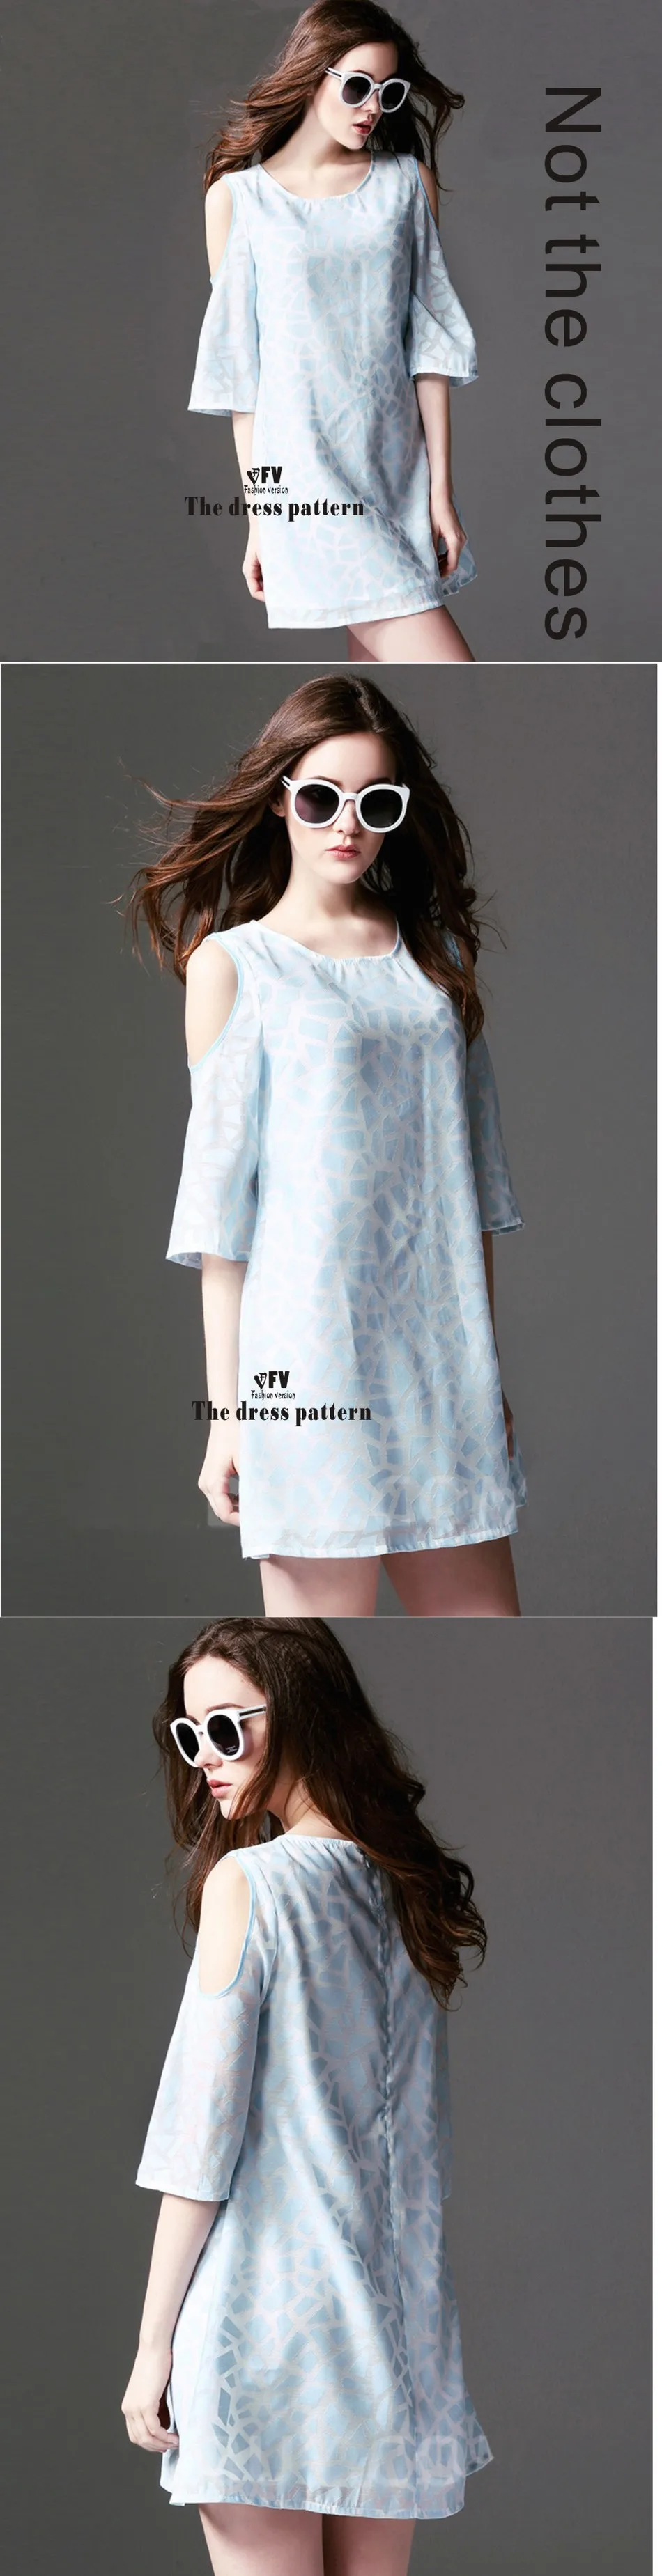 Платья Швейные шаблон резки одежды для рисования DIY(не продавая одежду) BLQ-203